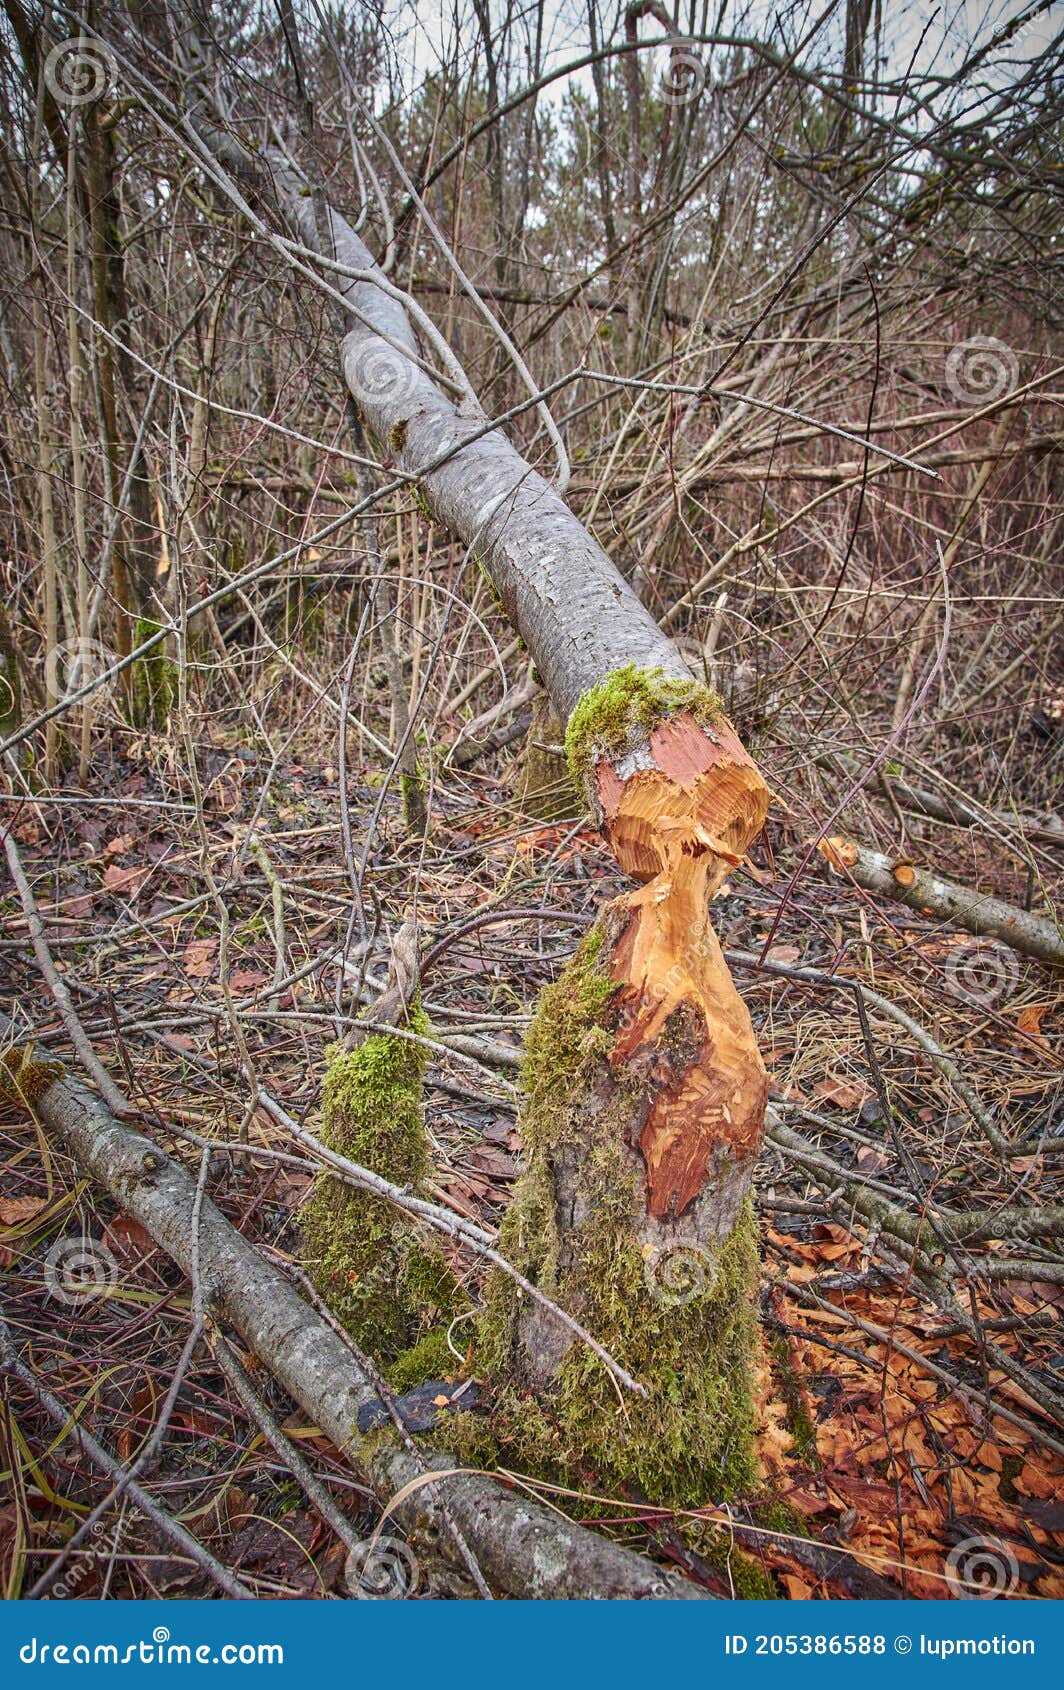 Albero abbattuto nella foresta. albero abbattuto da castori nei boschi. taglio di legname